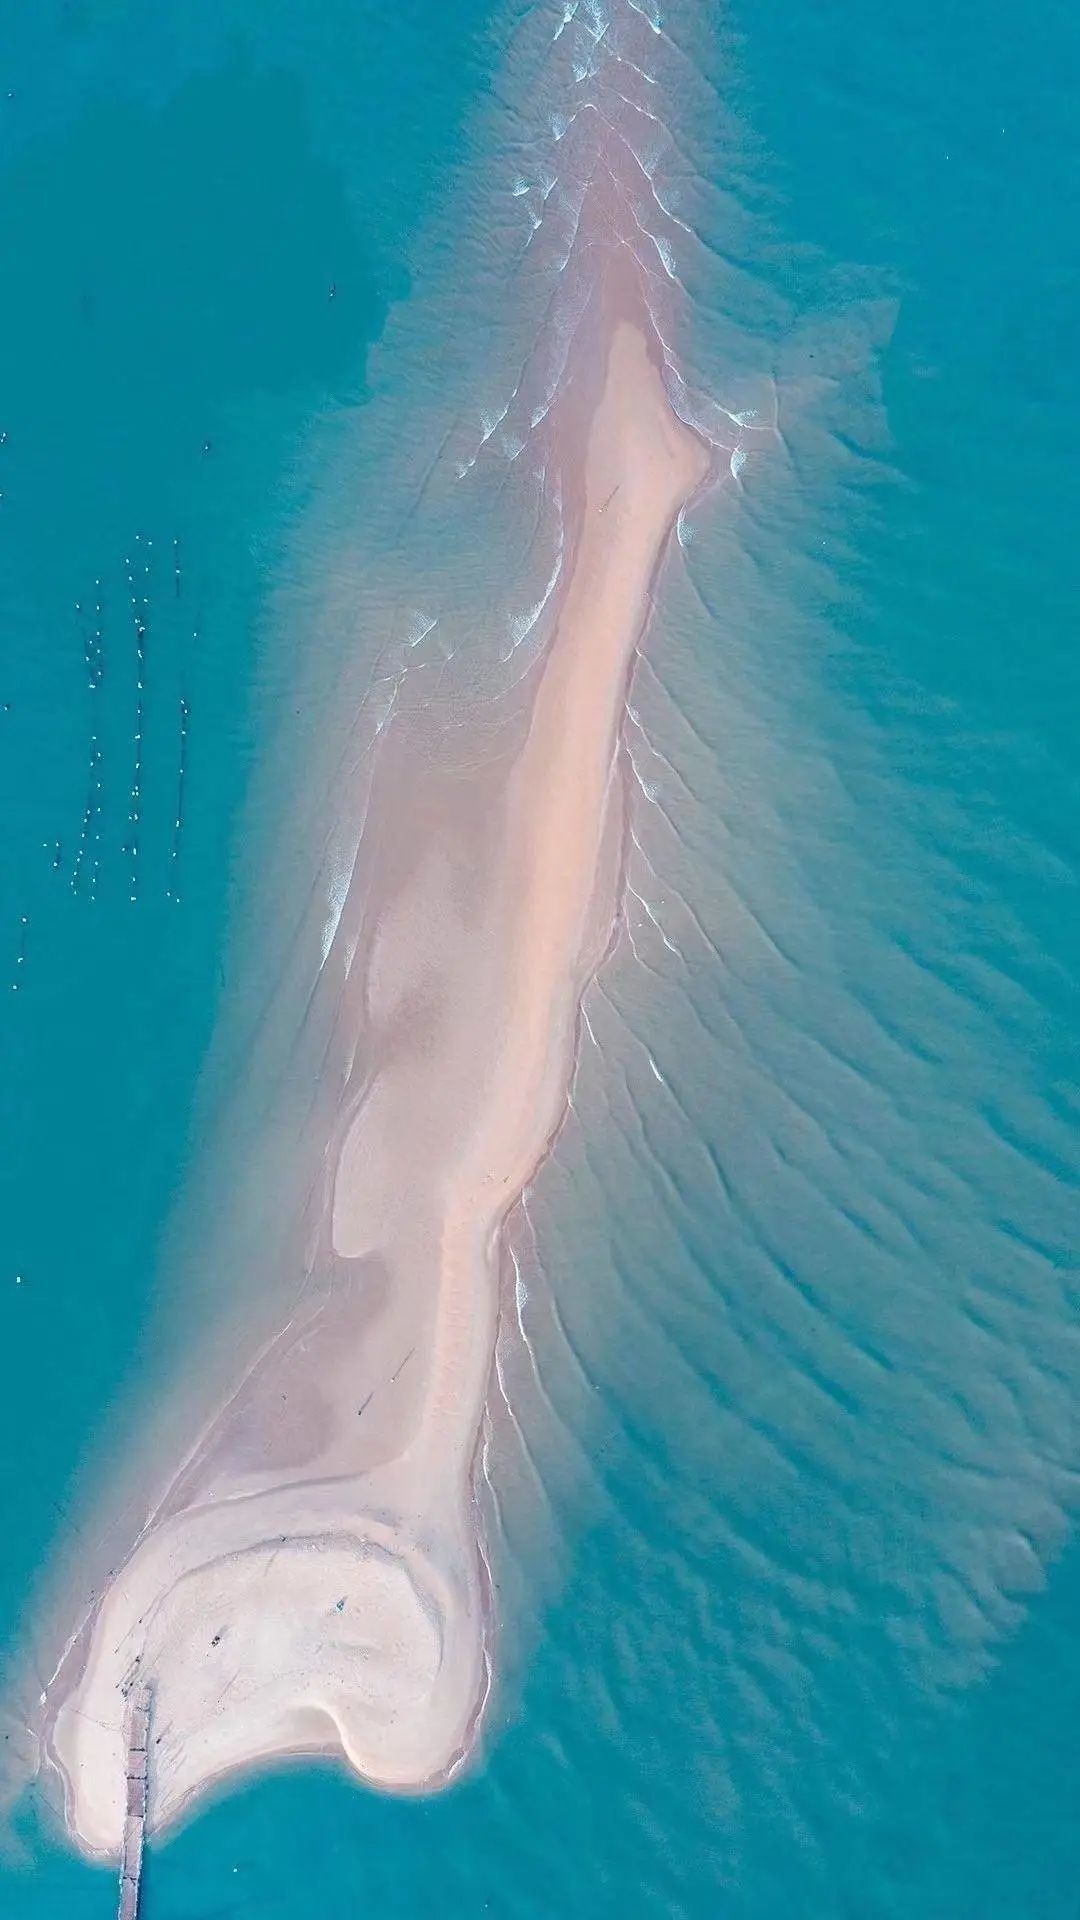 东山岛潮汐变化间形成的鱼骨沙洲景观 ©网络